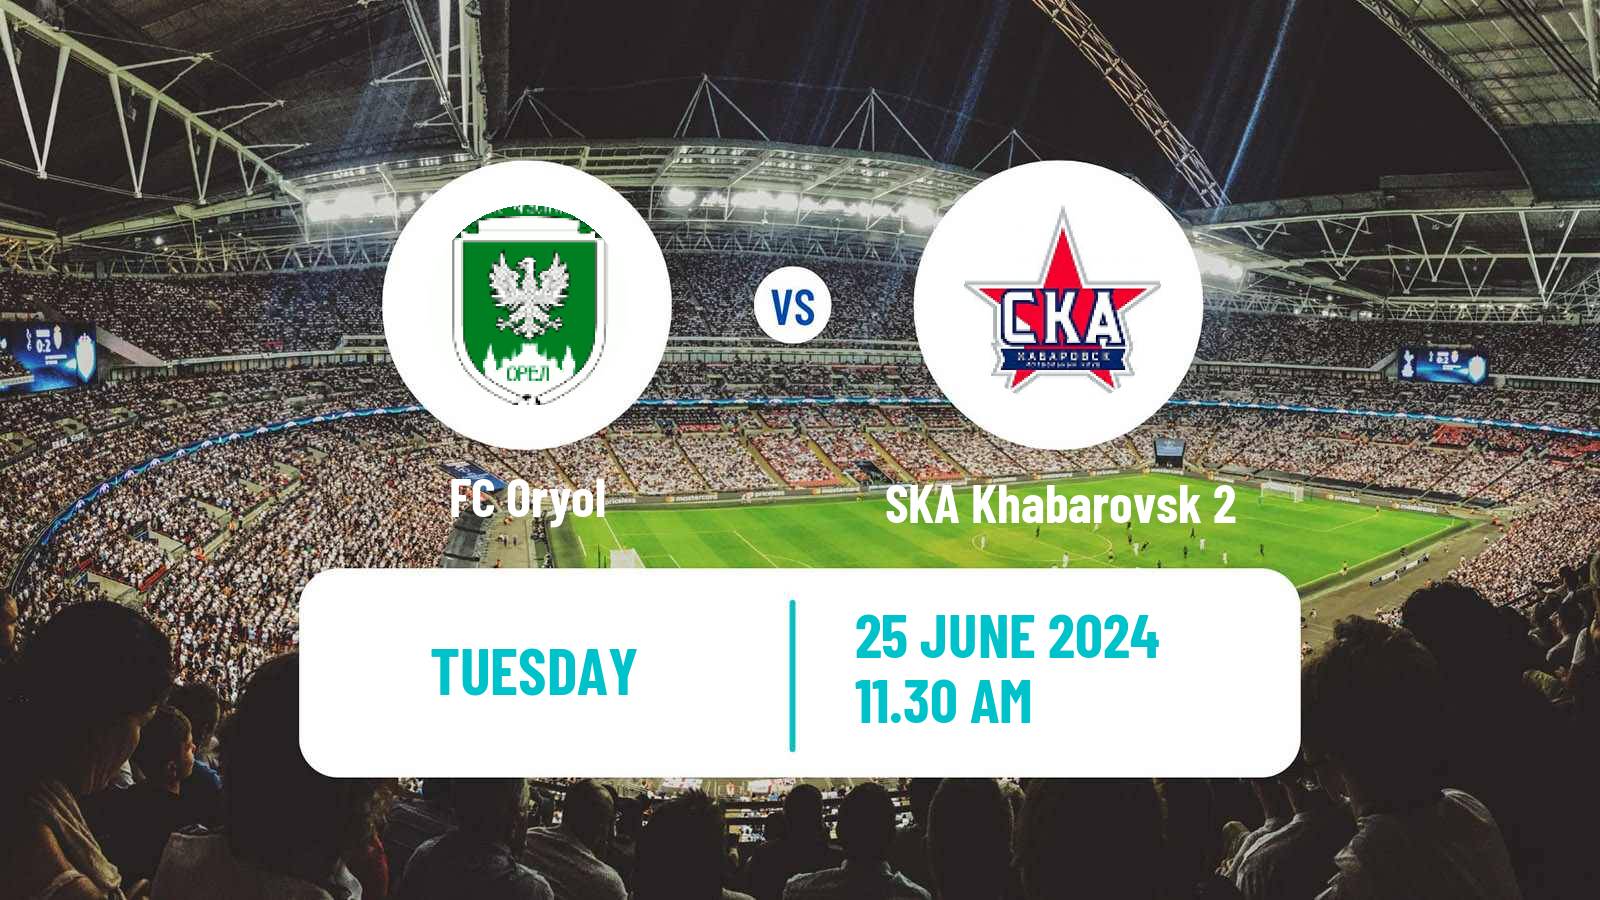 Soccer FNL 2 Division B Group 3 Oryol - SKA Khabarovsk 2